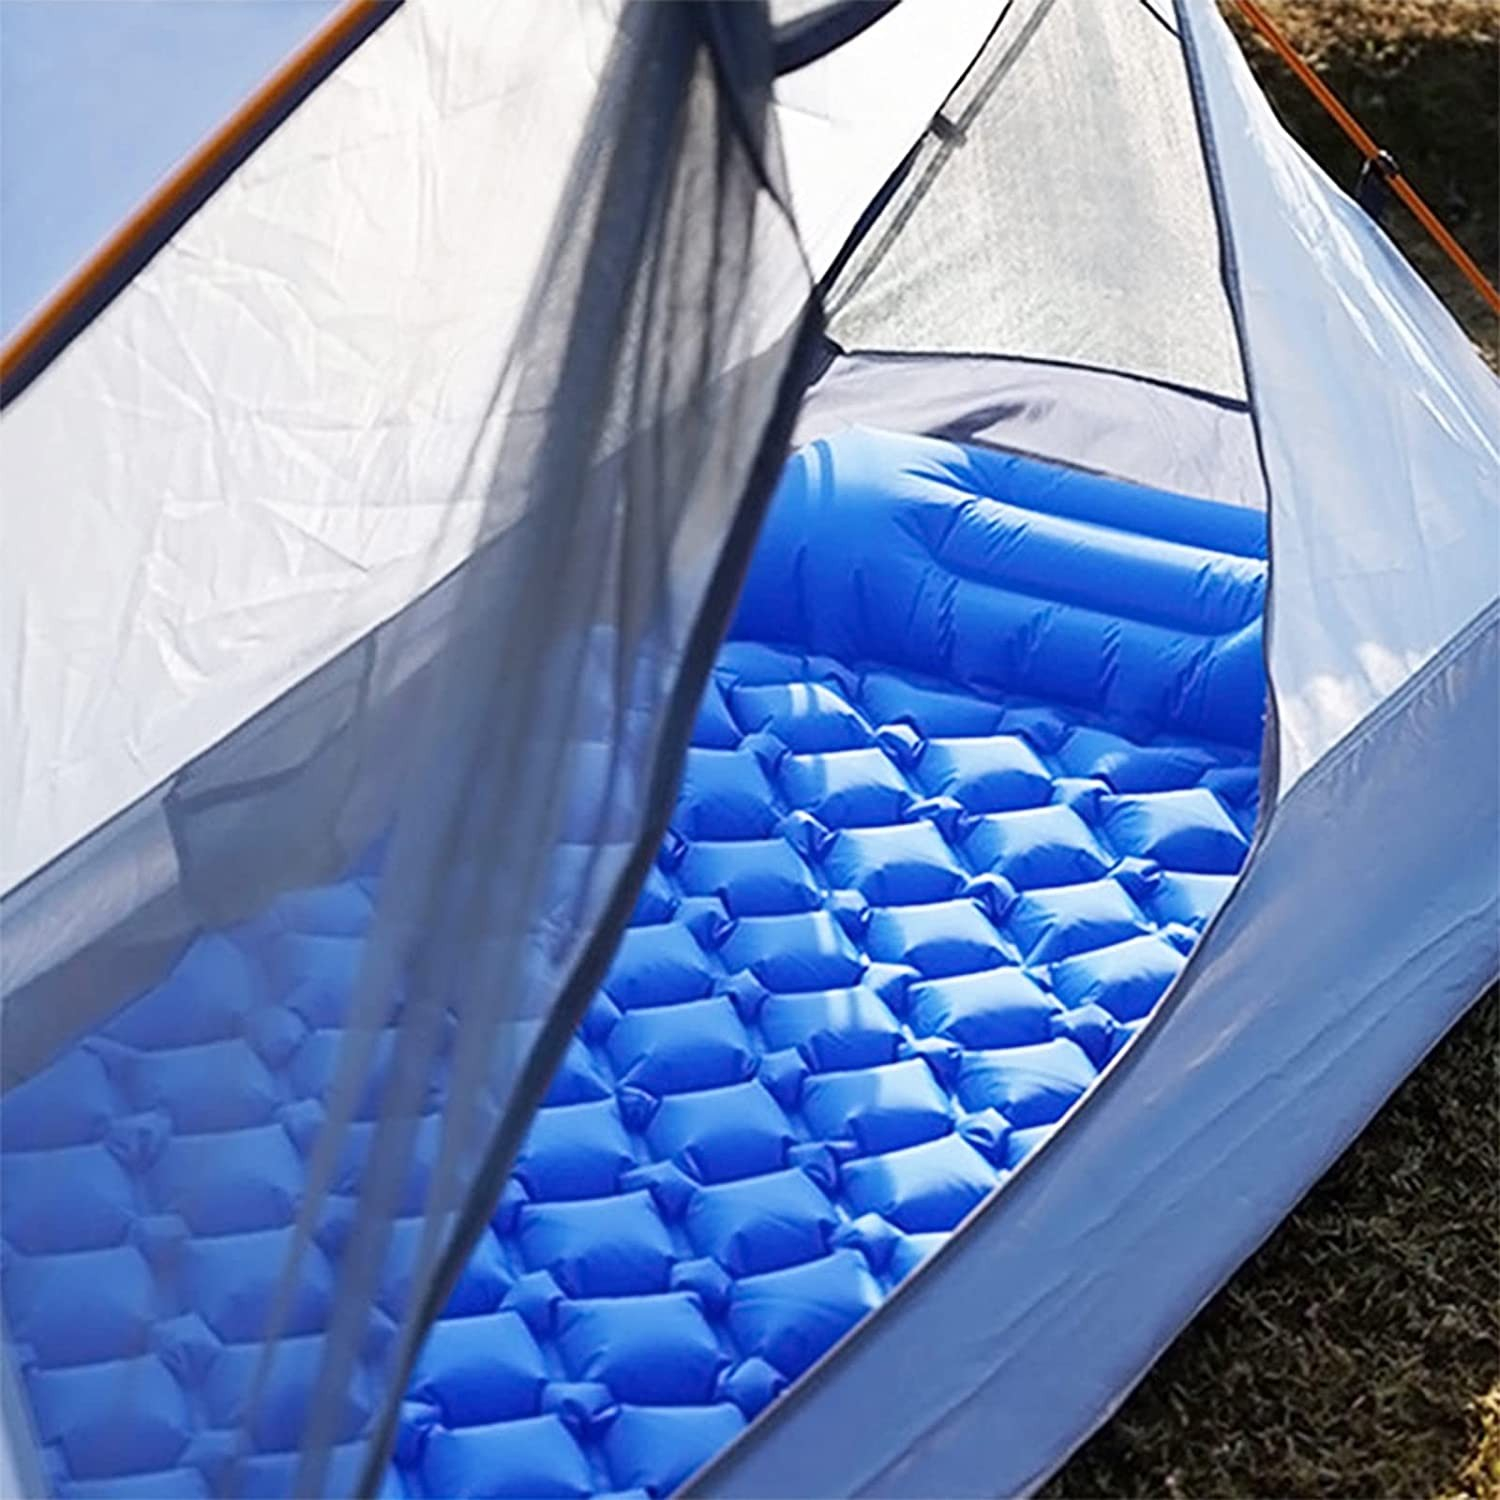 MOVTOTOP Isomatte Camping, Aufblasbare Luftmatratze, Komfortable